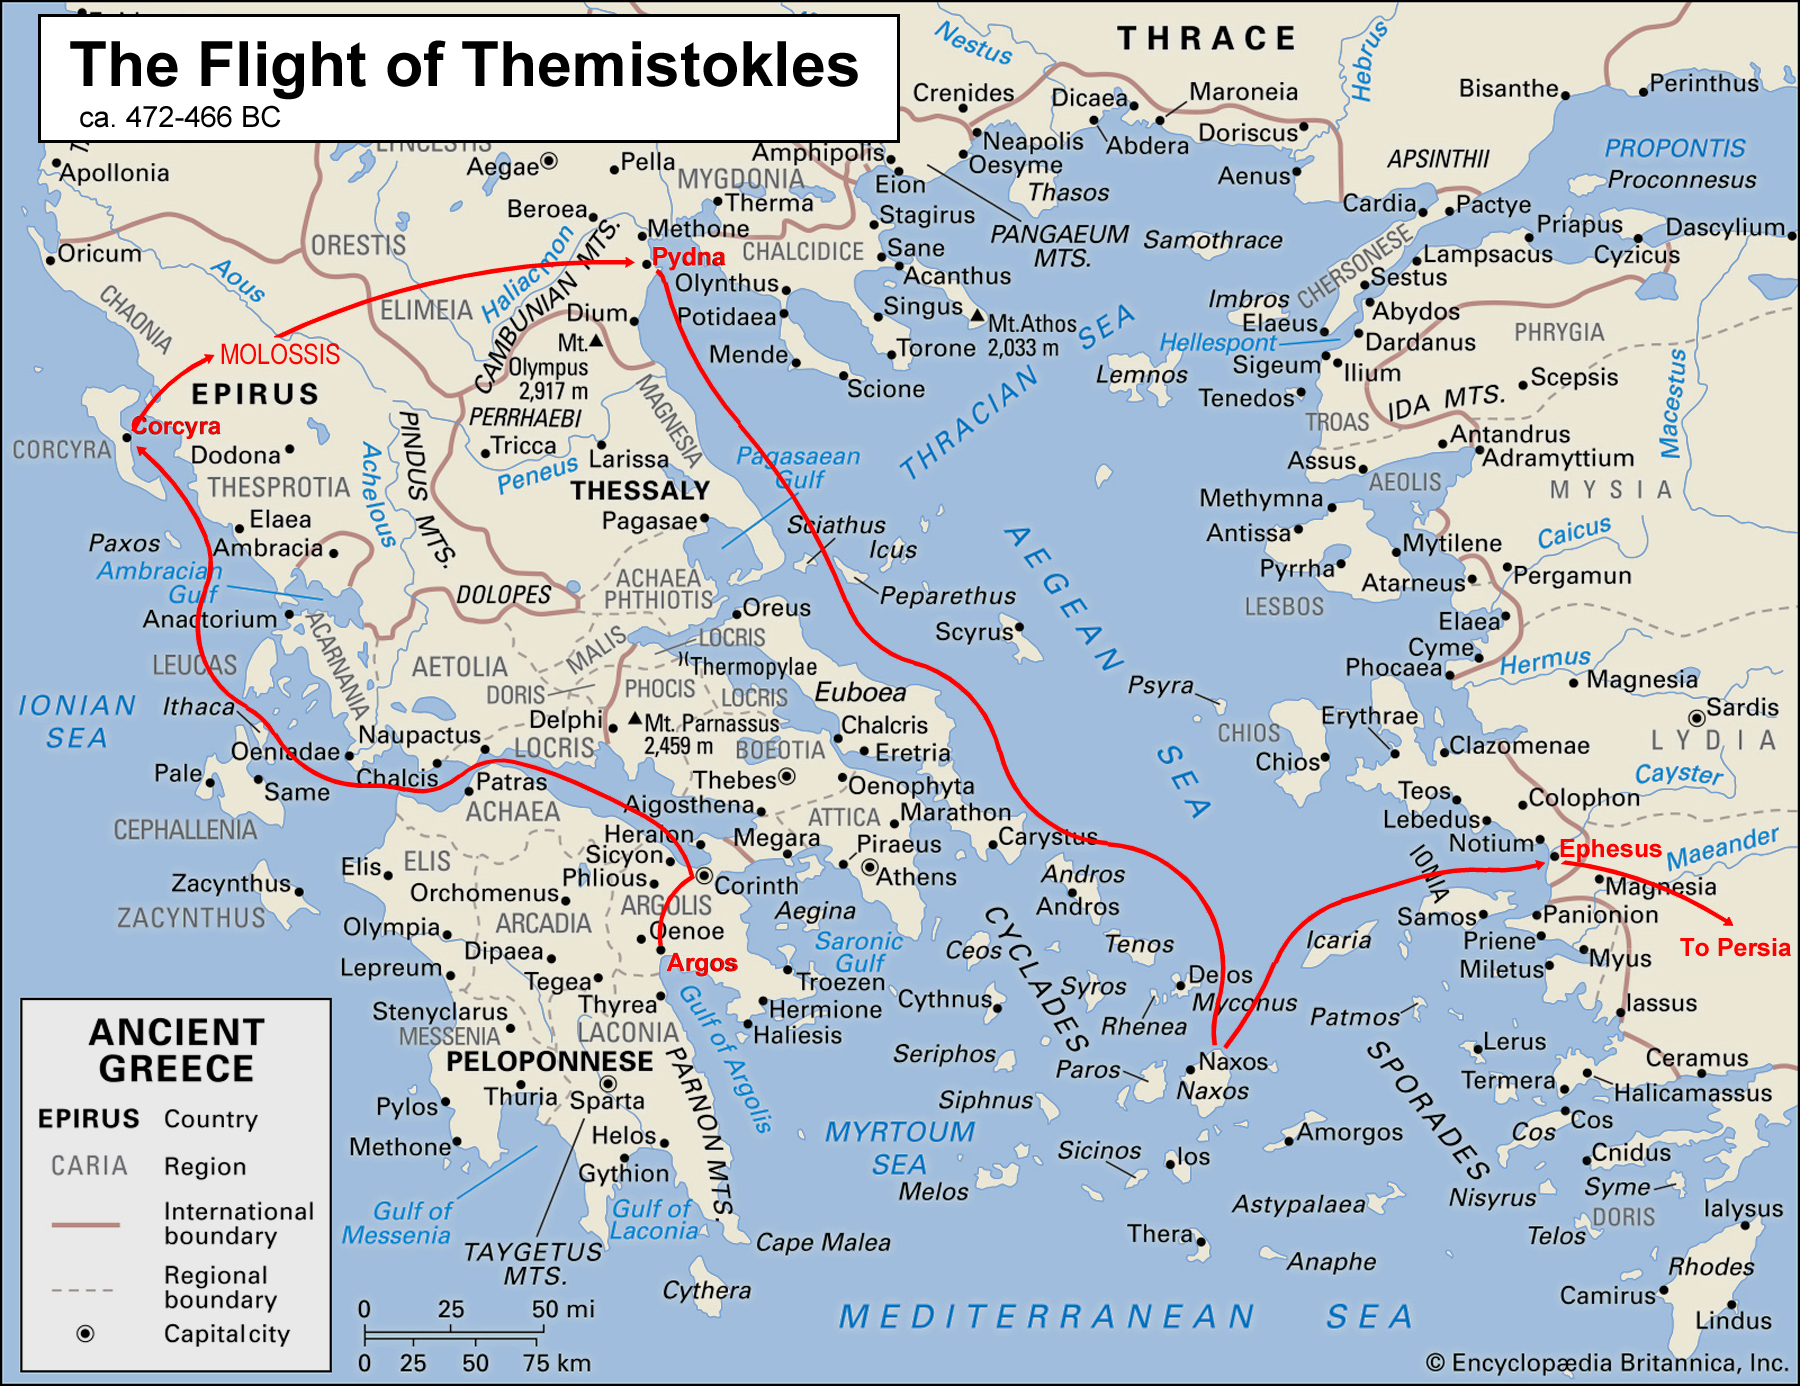 Fig_2_Flight_of_Themistokles.jpg